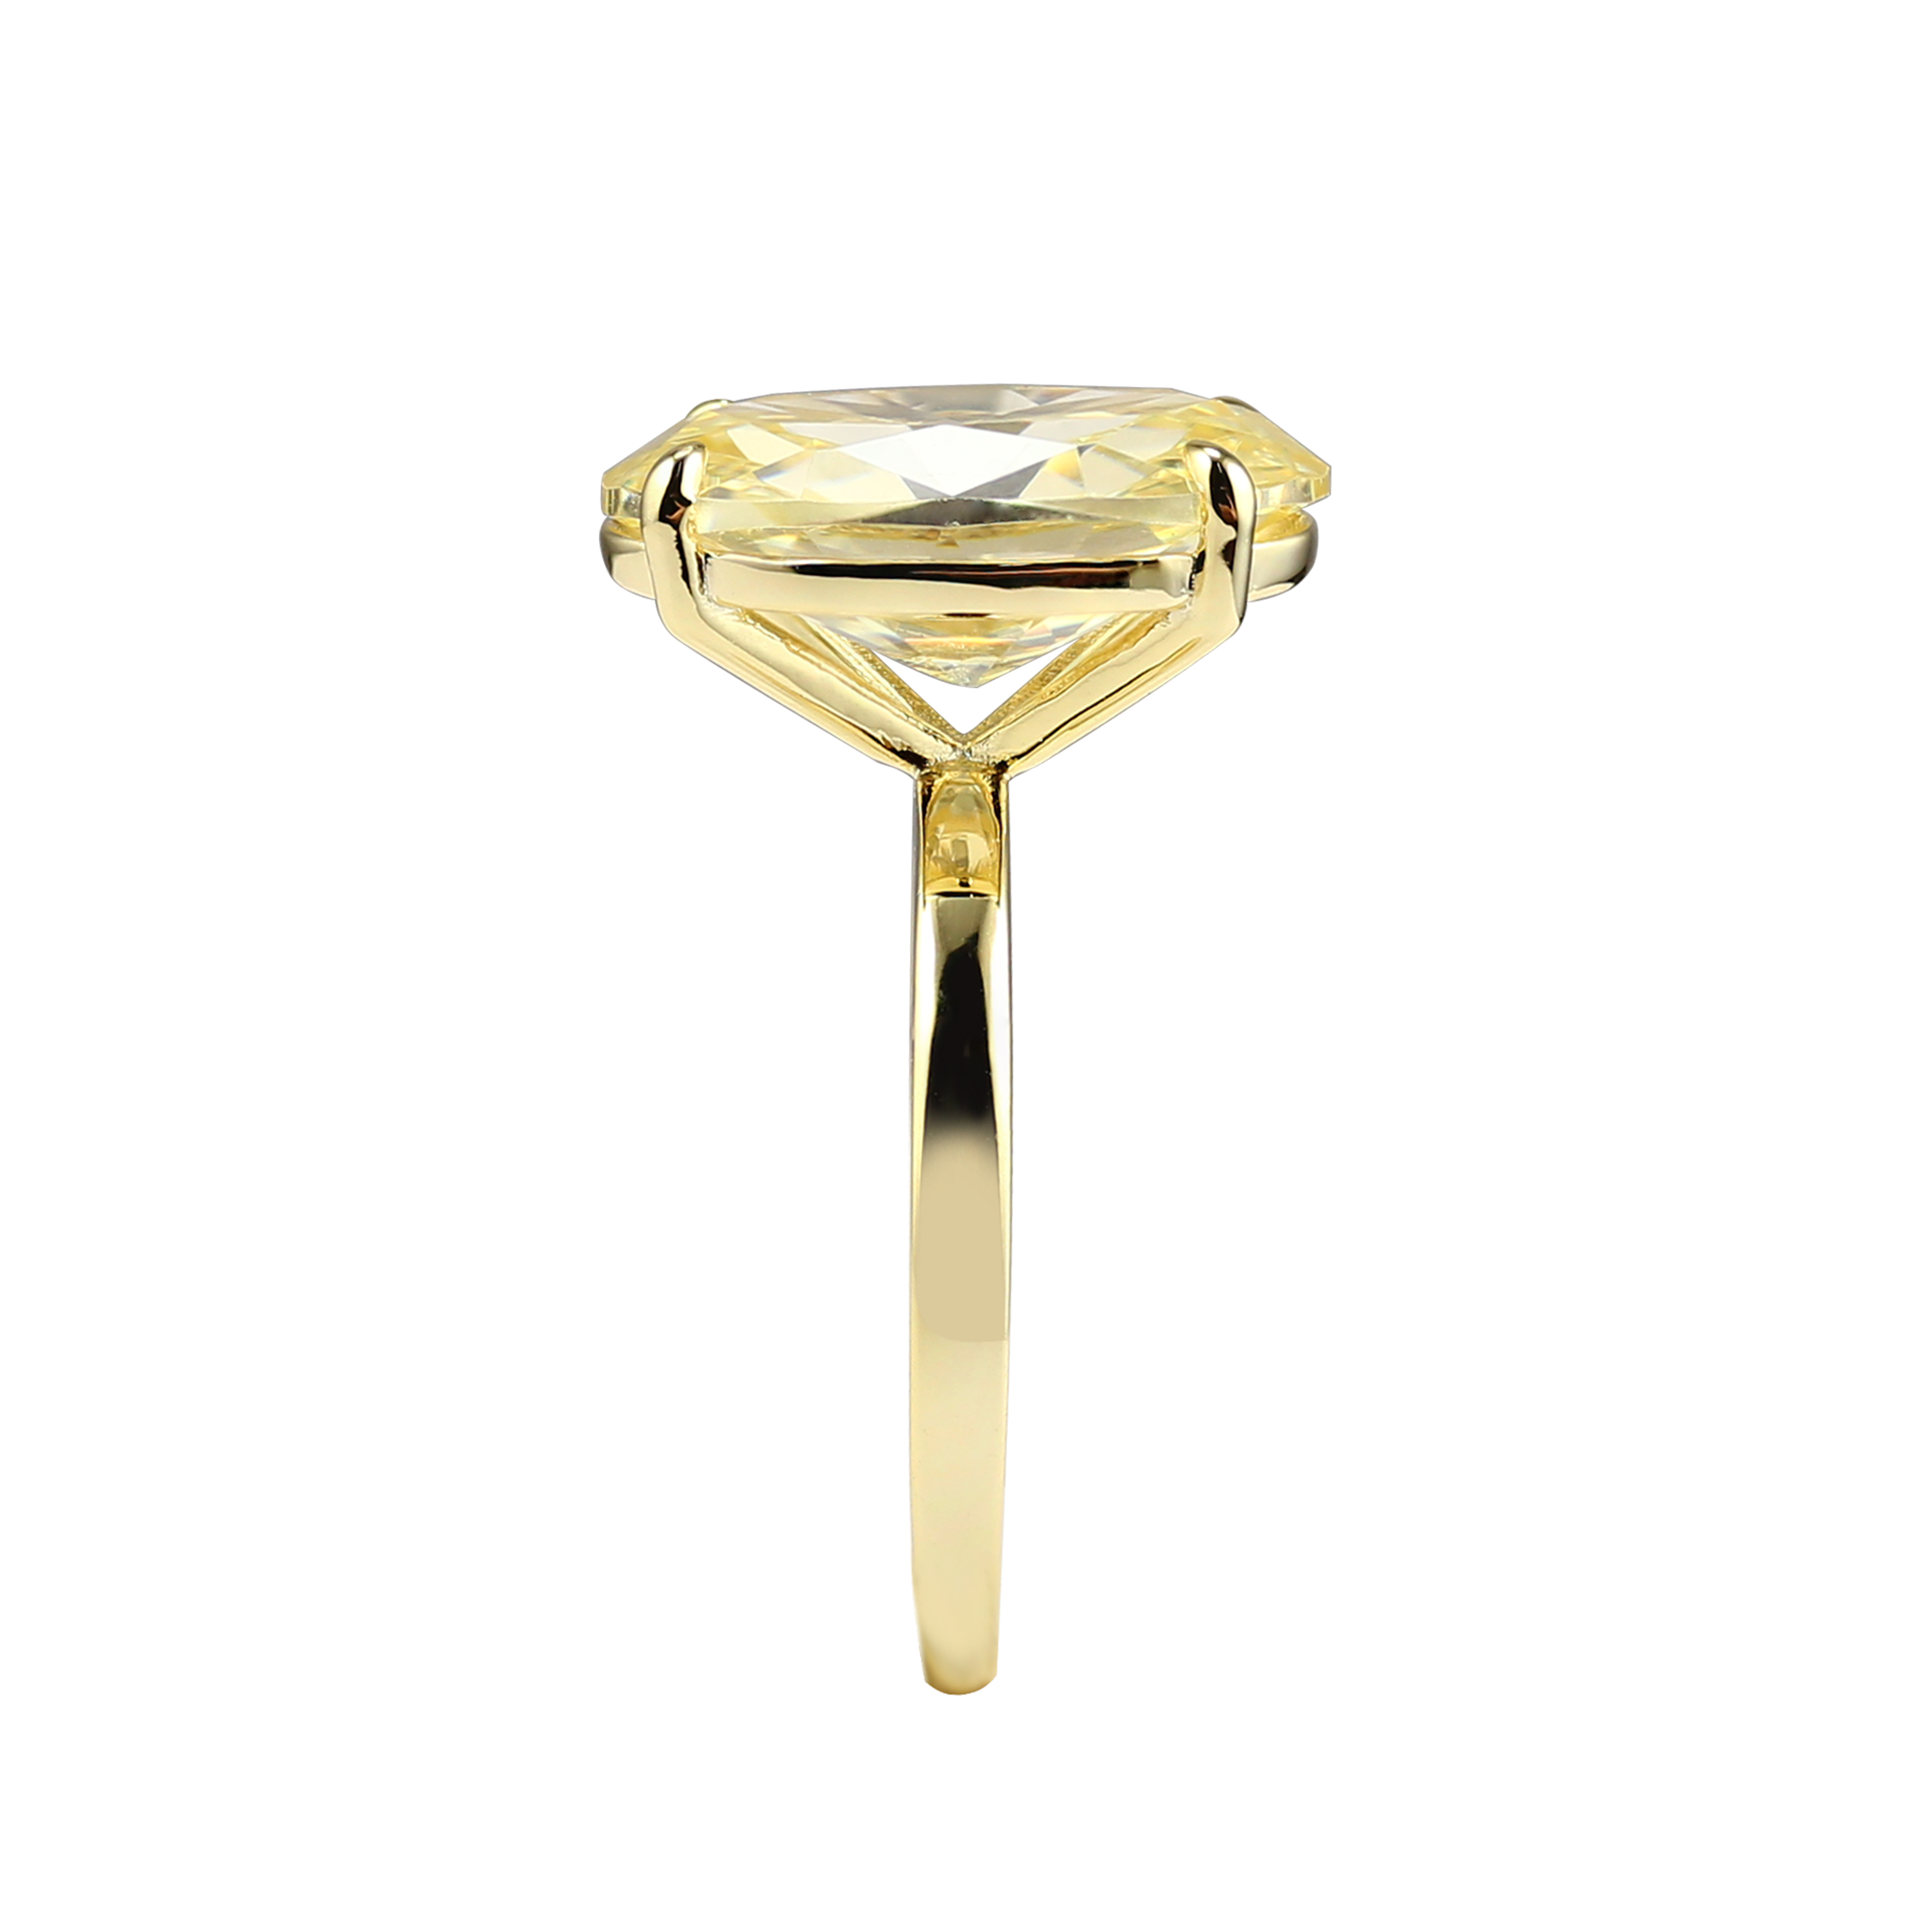 SIMONE – Yellow Diamond Simulant Ring